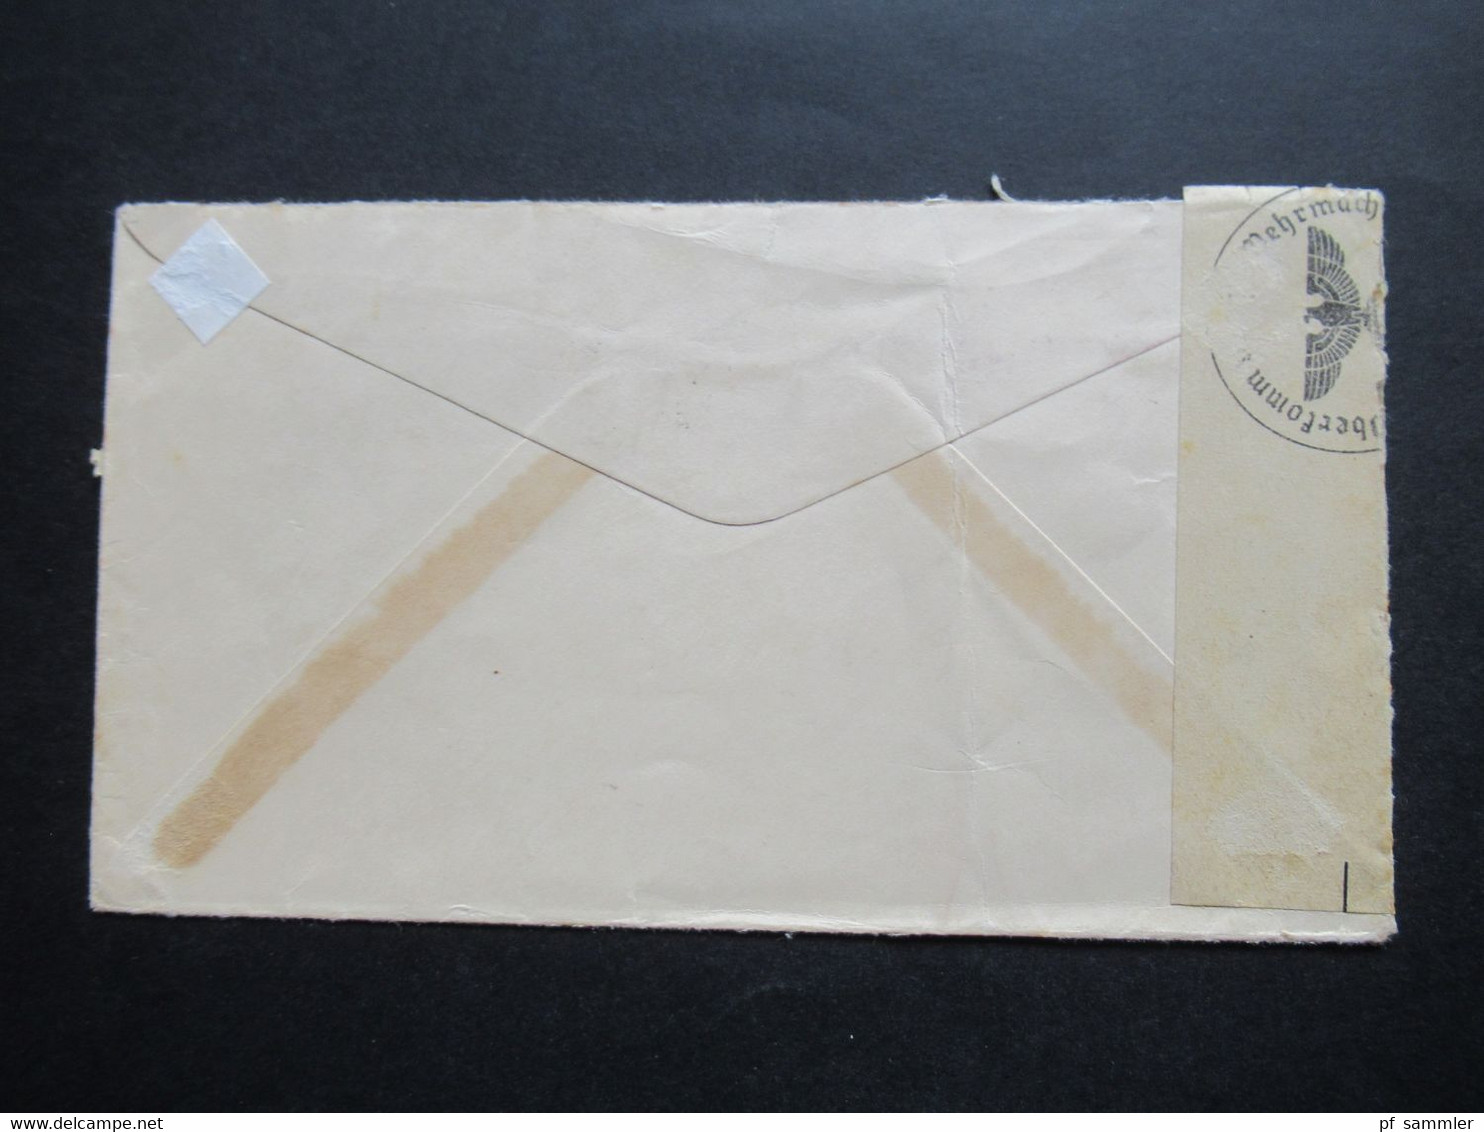 USA 1939 Zensurbeleg Air Mail By Clipper OKW Zensur Nach Bodenmais Adolf Hitler Platz 9 Flugpostmarke Trans Atlantic - Covers & Documents